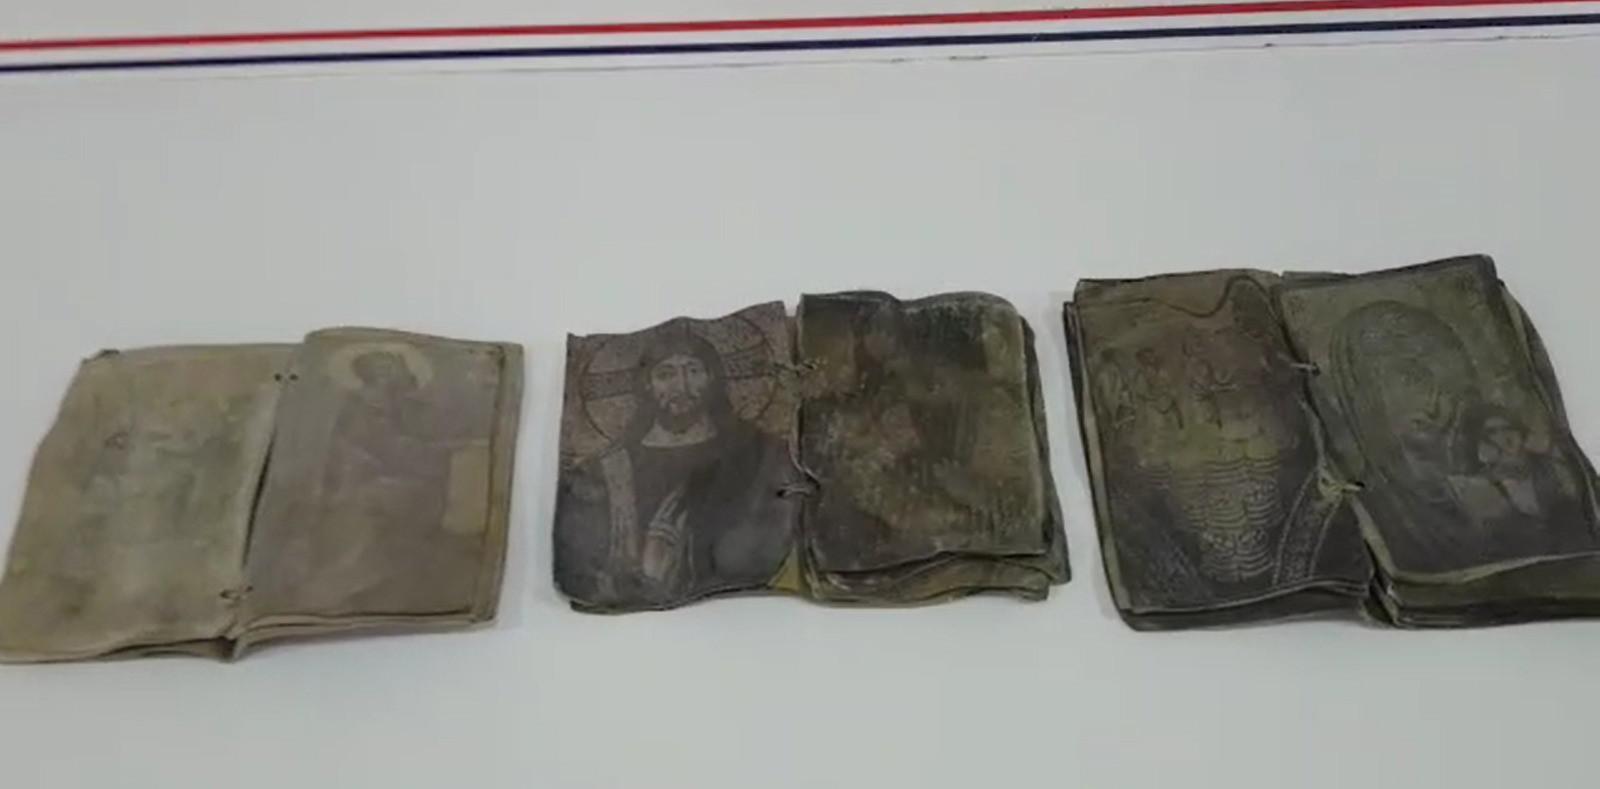 Kırıkkalede ceylan derisi üzerine yazılmış tarihi dua kitapları ele geçirildi